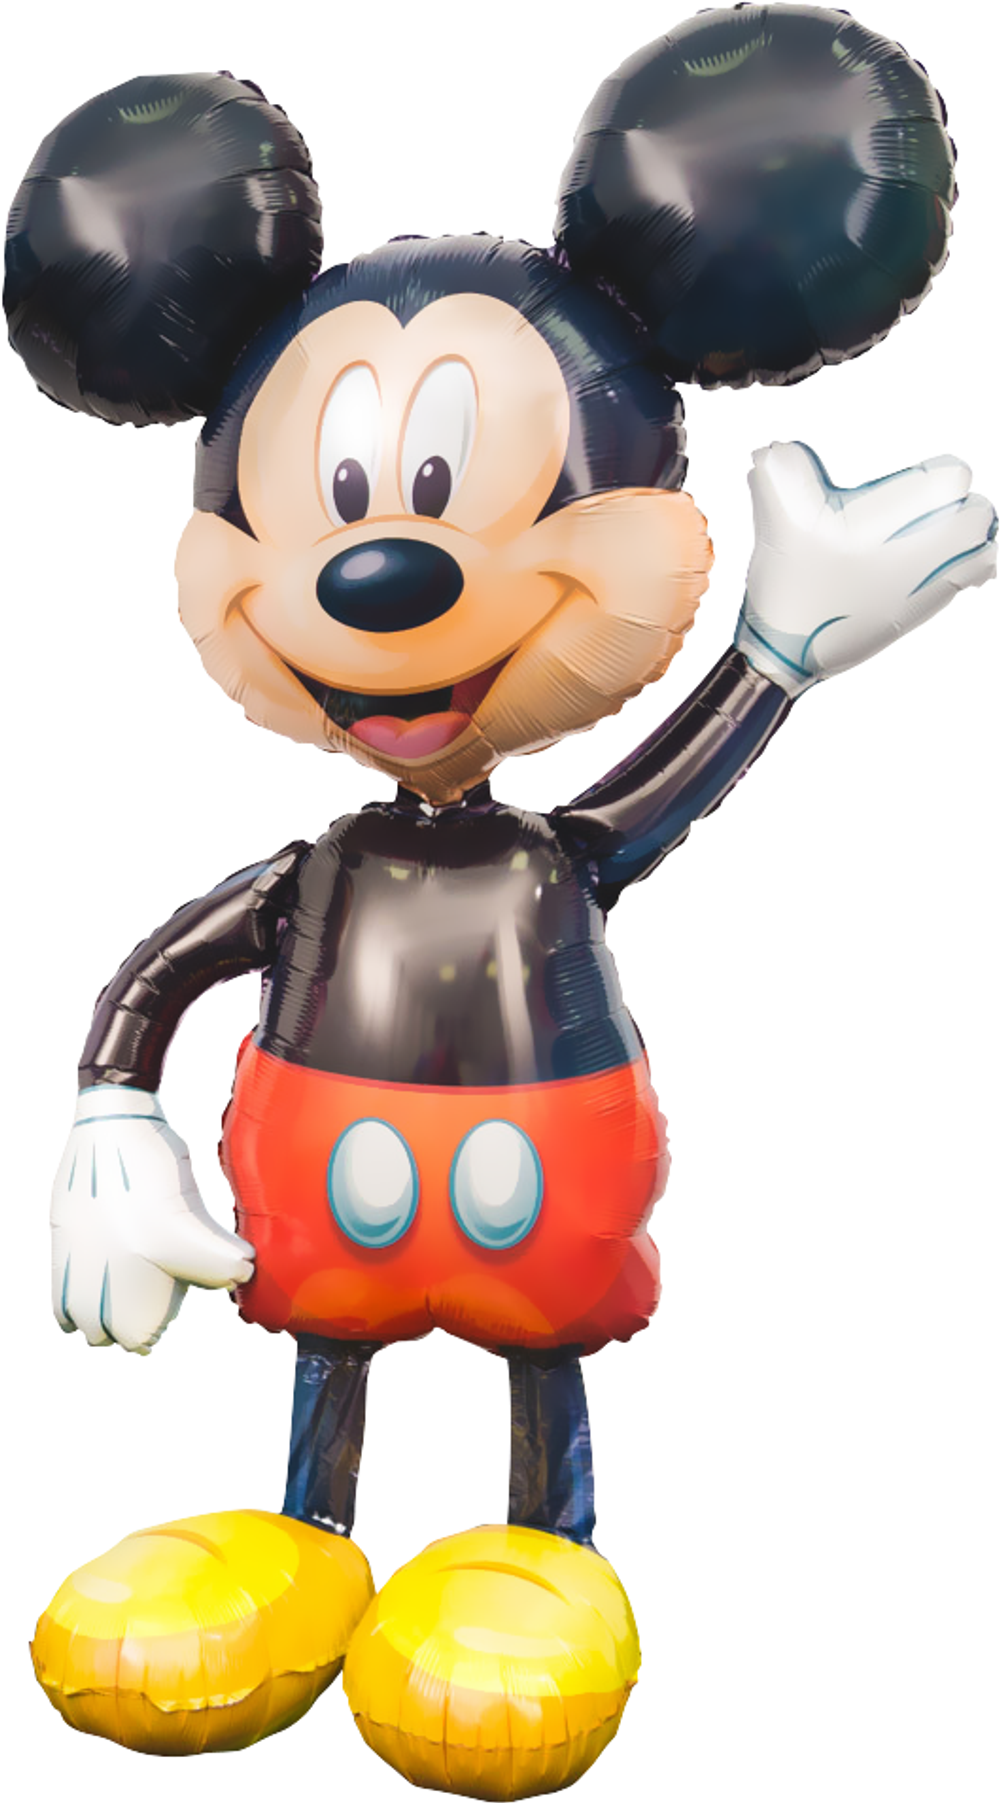 Как сделать уши Микки Мауса и Минни Маус? / How to make Mickey Mouse ears? / DIY / HANDMADE